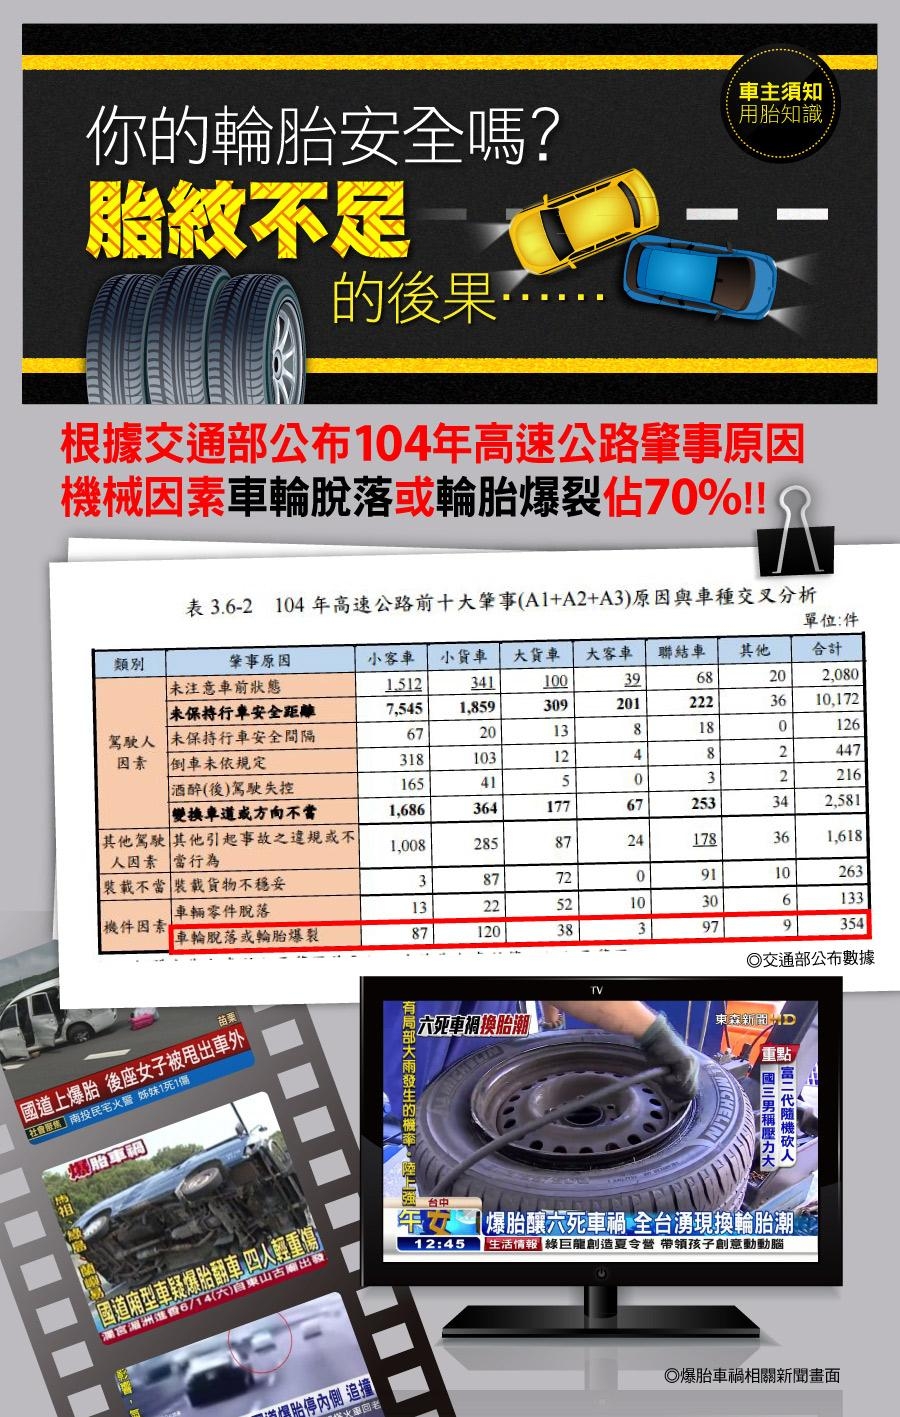 【將軍】ALTIMAX GS5_215/55/16吋舒適輪胎_送專業安裝 四入組(GS5)